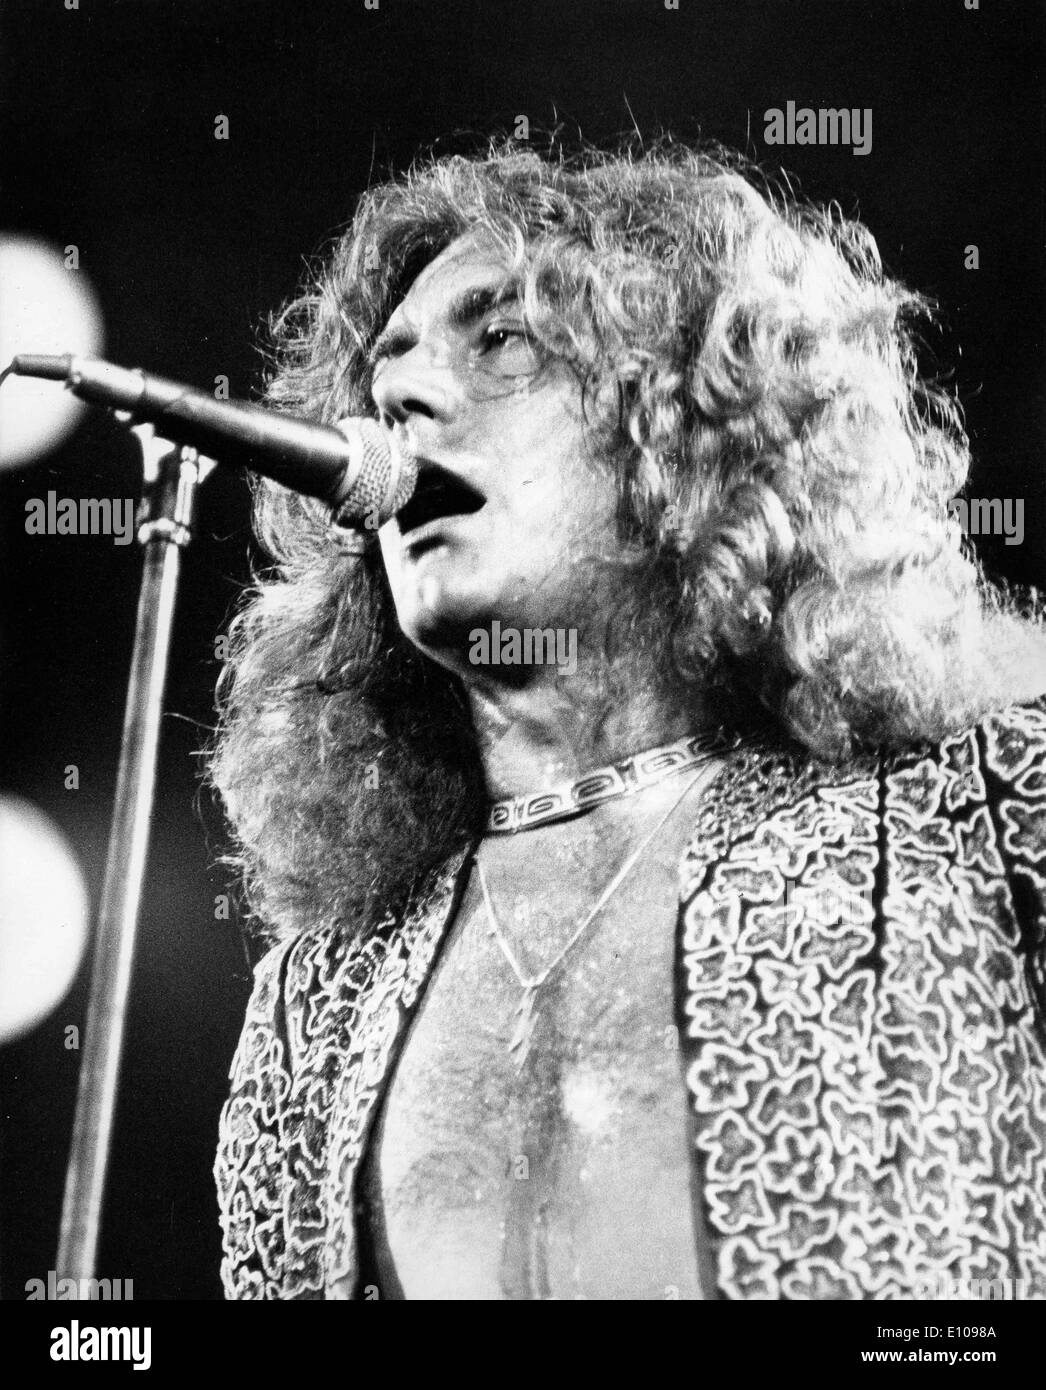 LED Zeppelin-Sänger Robert Plant in Konzert Stockfotografie - Alamy